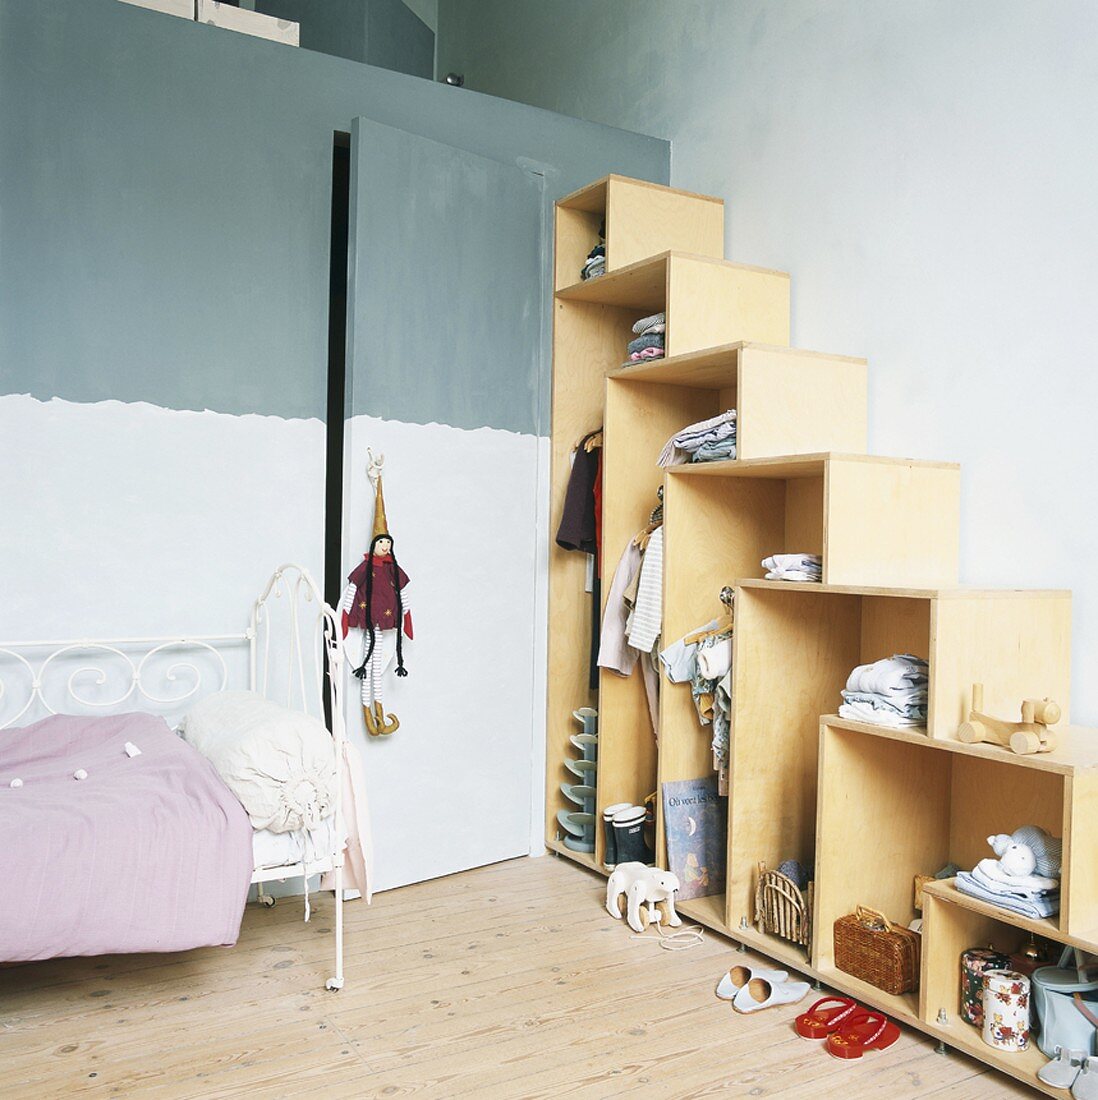 Kinderzimmer mit offenem Kleiderschrank in Stufenoptik, daneben ein weisses Metallbett und eine versteckte Zimmertür